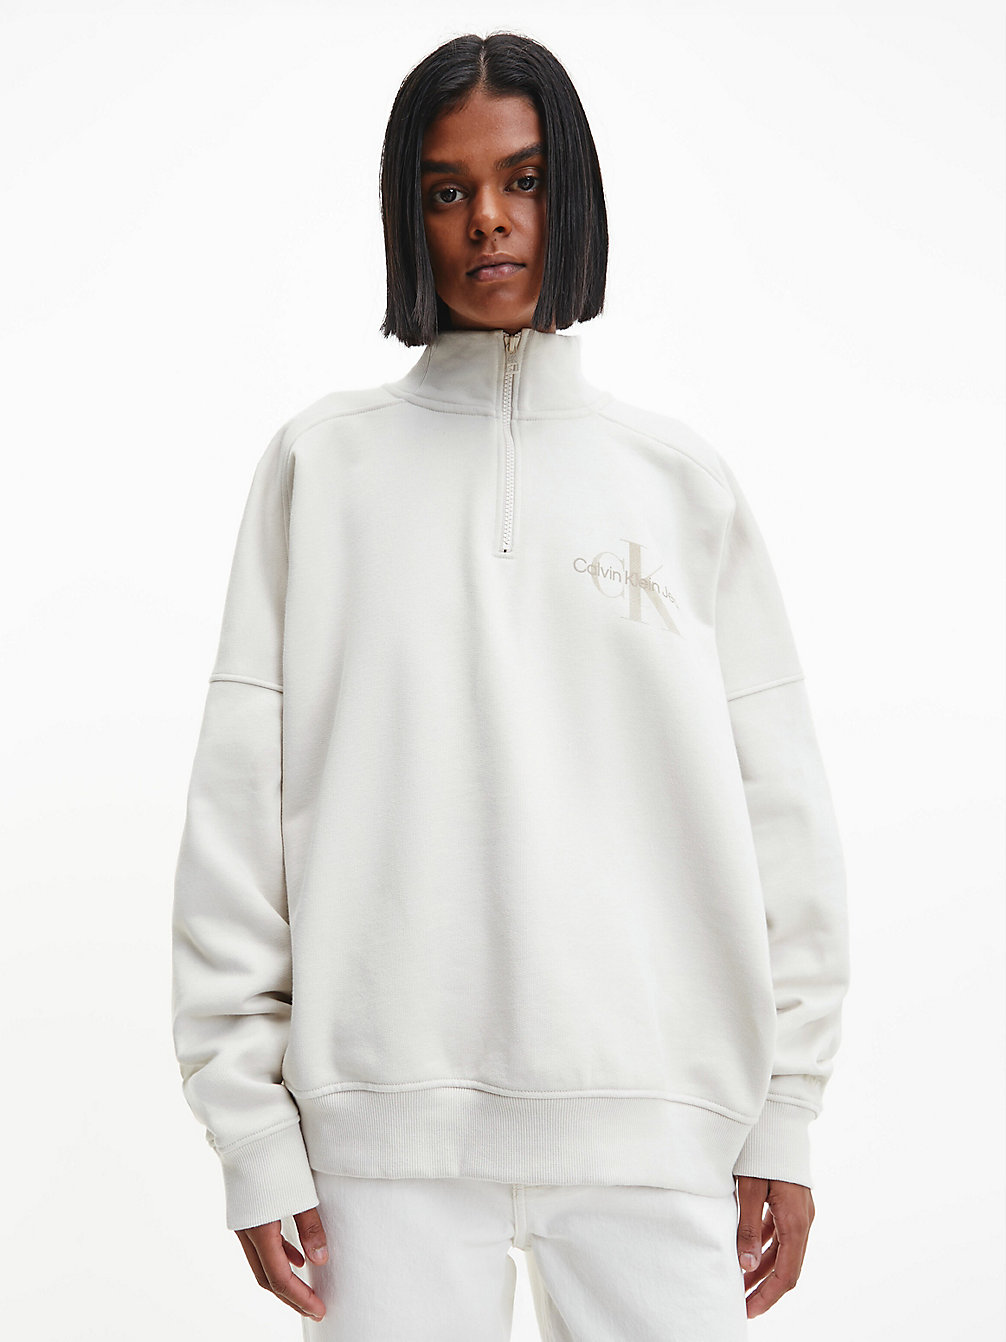 EGGSHELL Unisex-Sweatshirt Mit Reißverschluss Am Kragen undefined unisex Calvin Klein